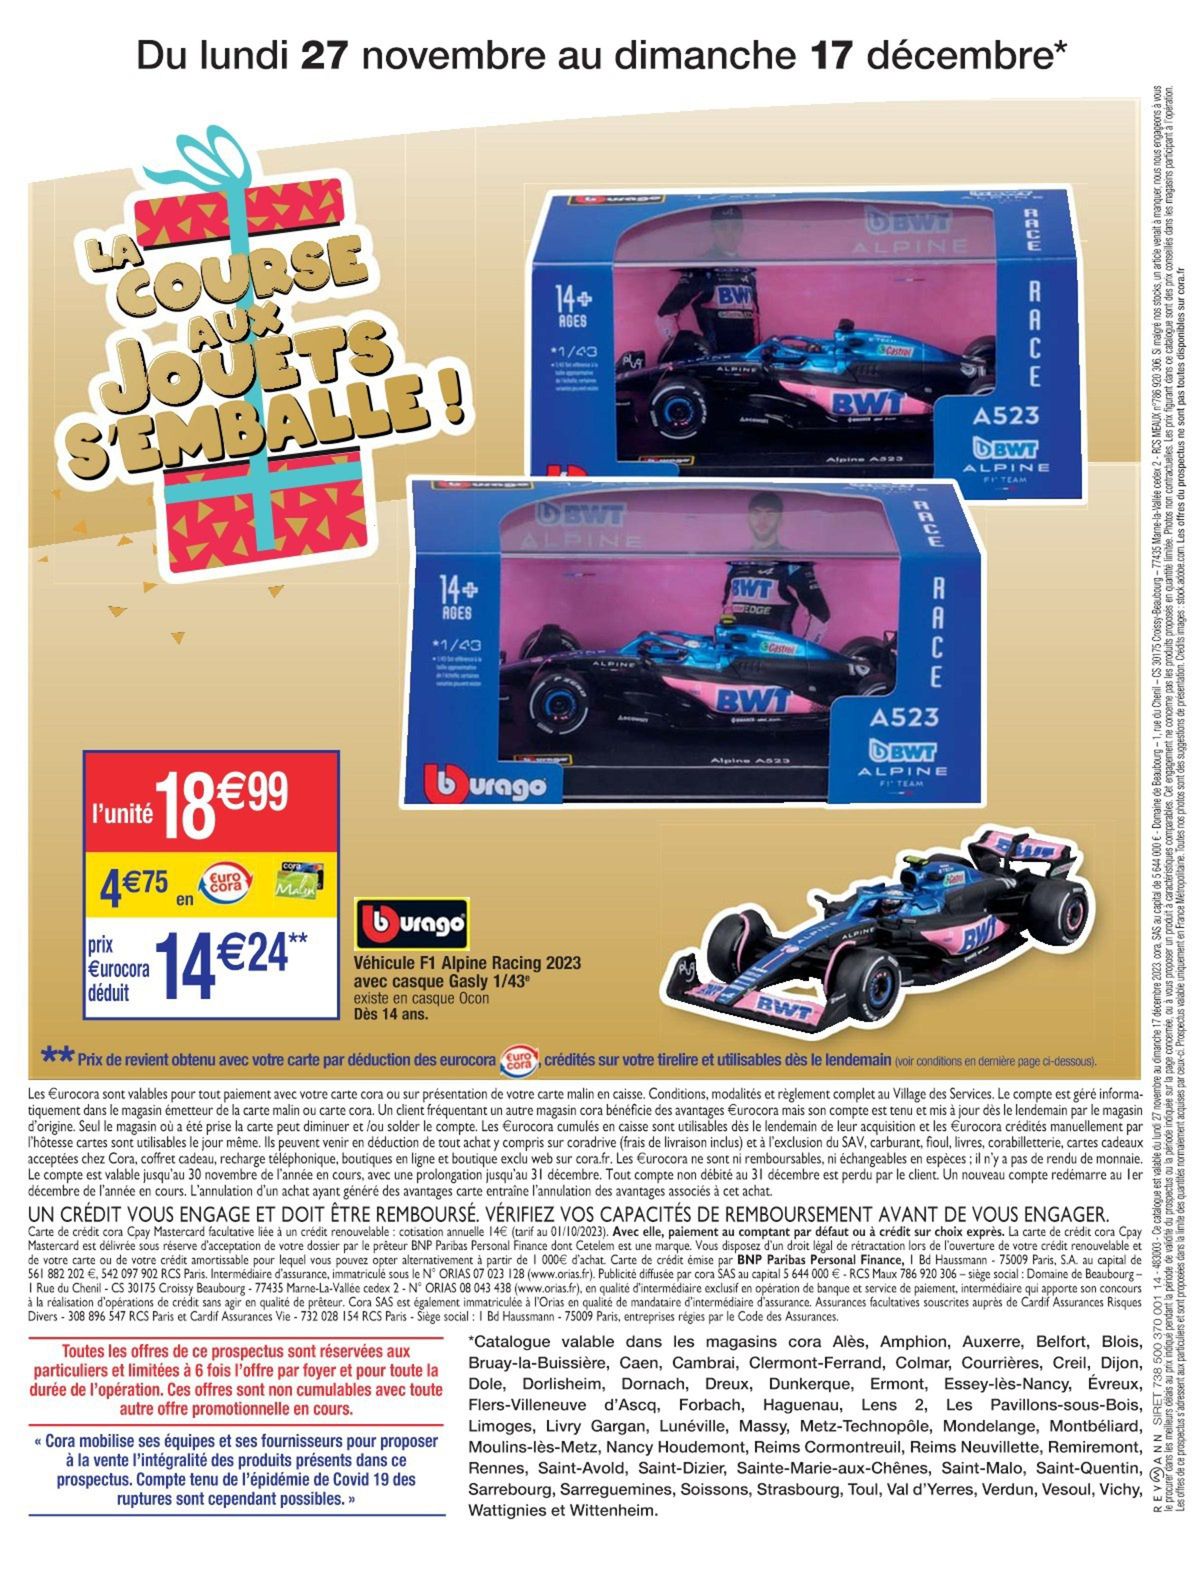 Catalogue La course aux jouets s'emballe !, page 00008